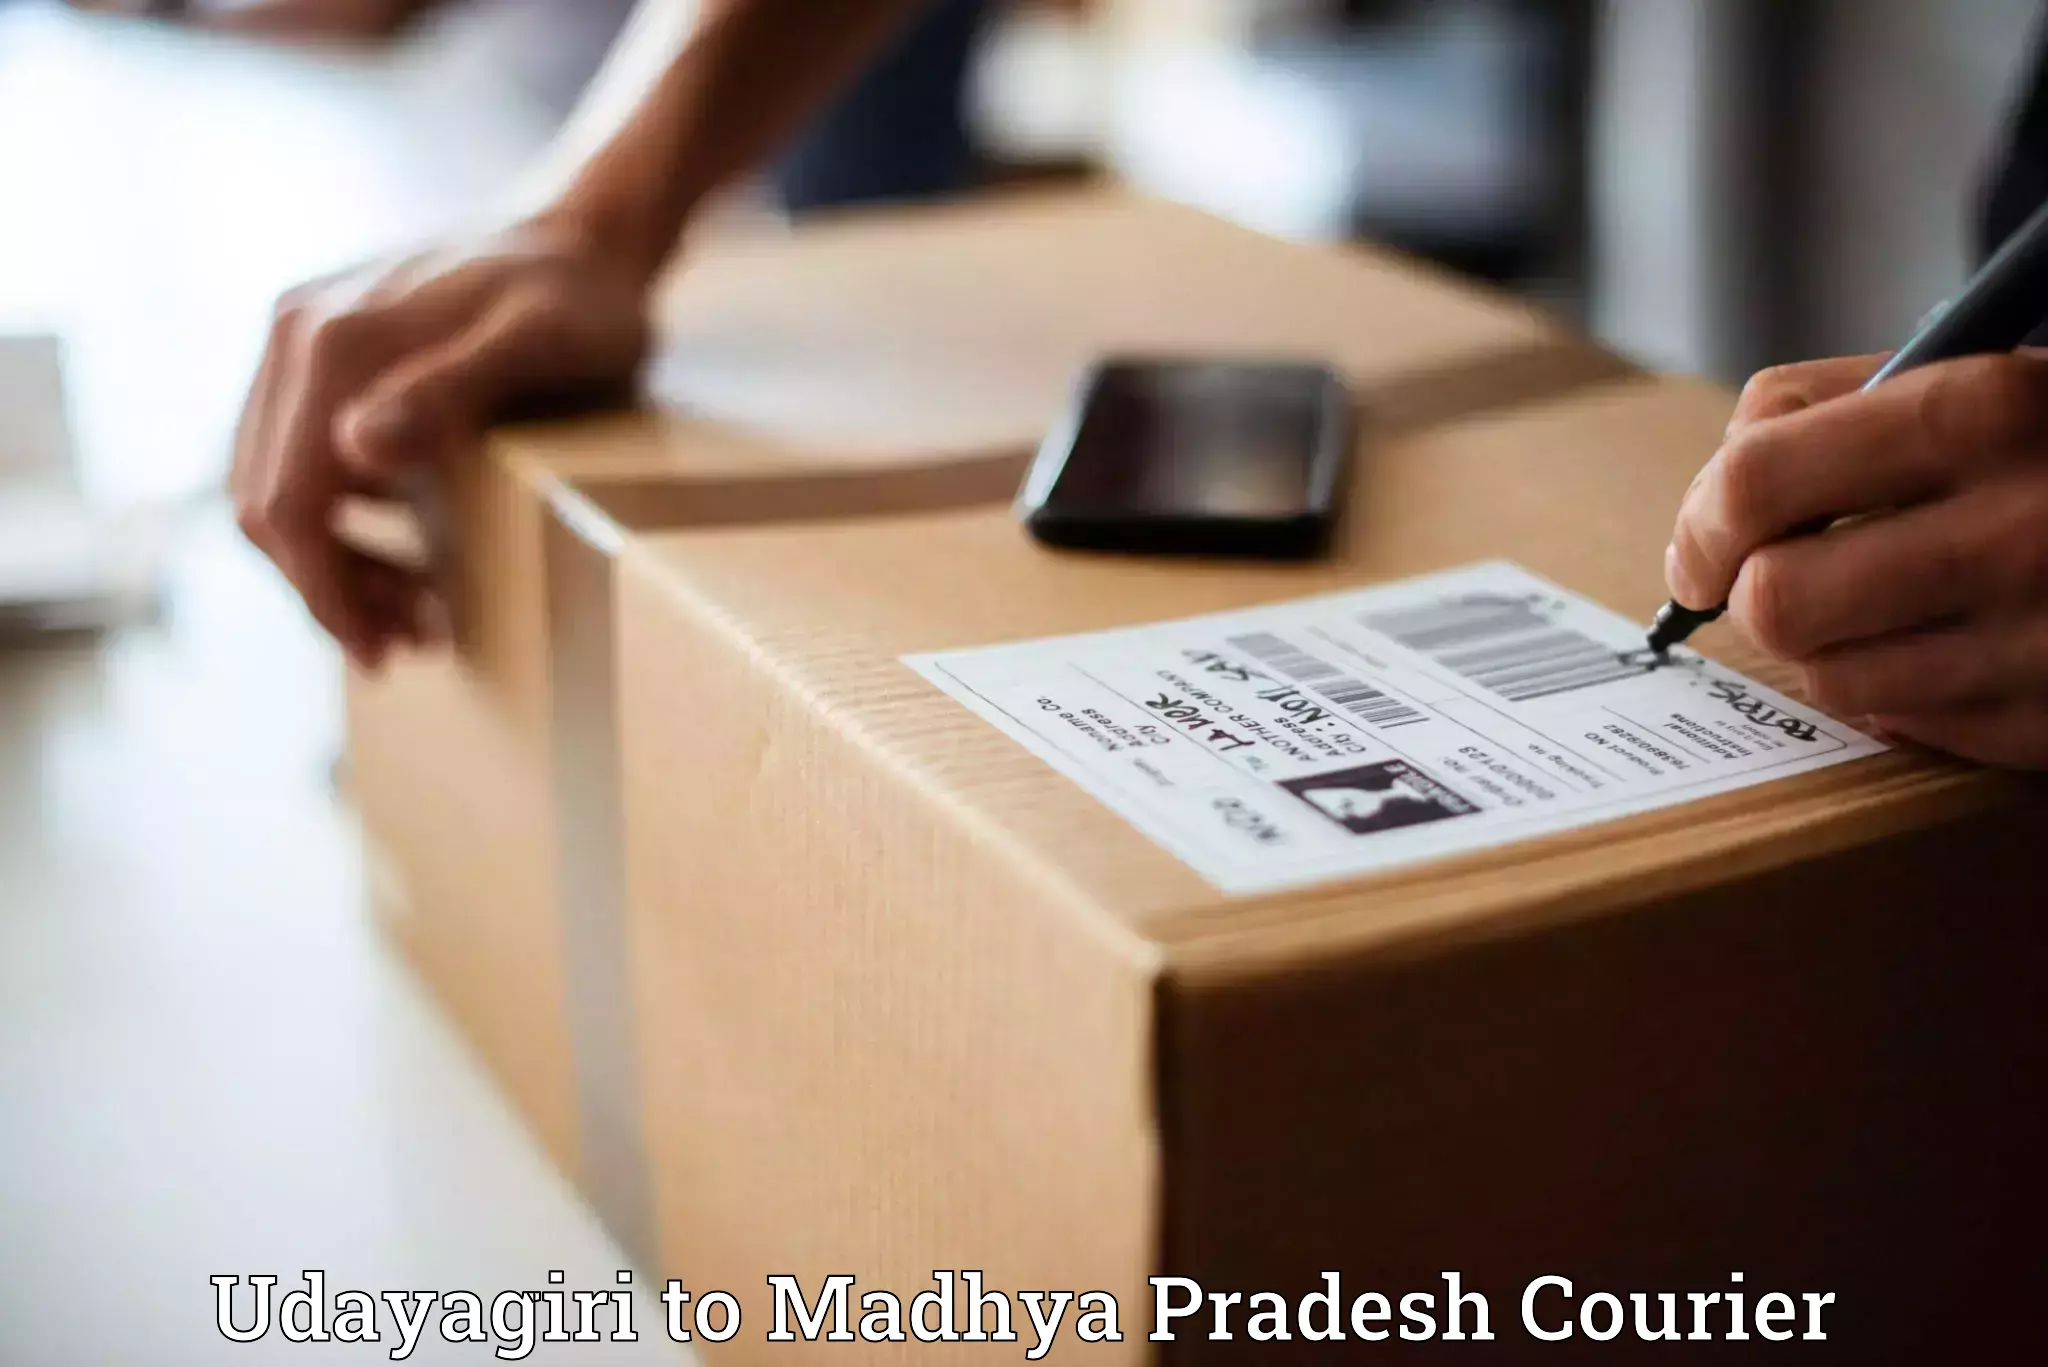 Efficient parcel transport Udayagiri to Madhya Pradesh